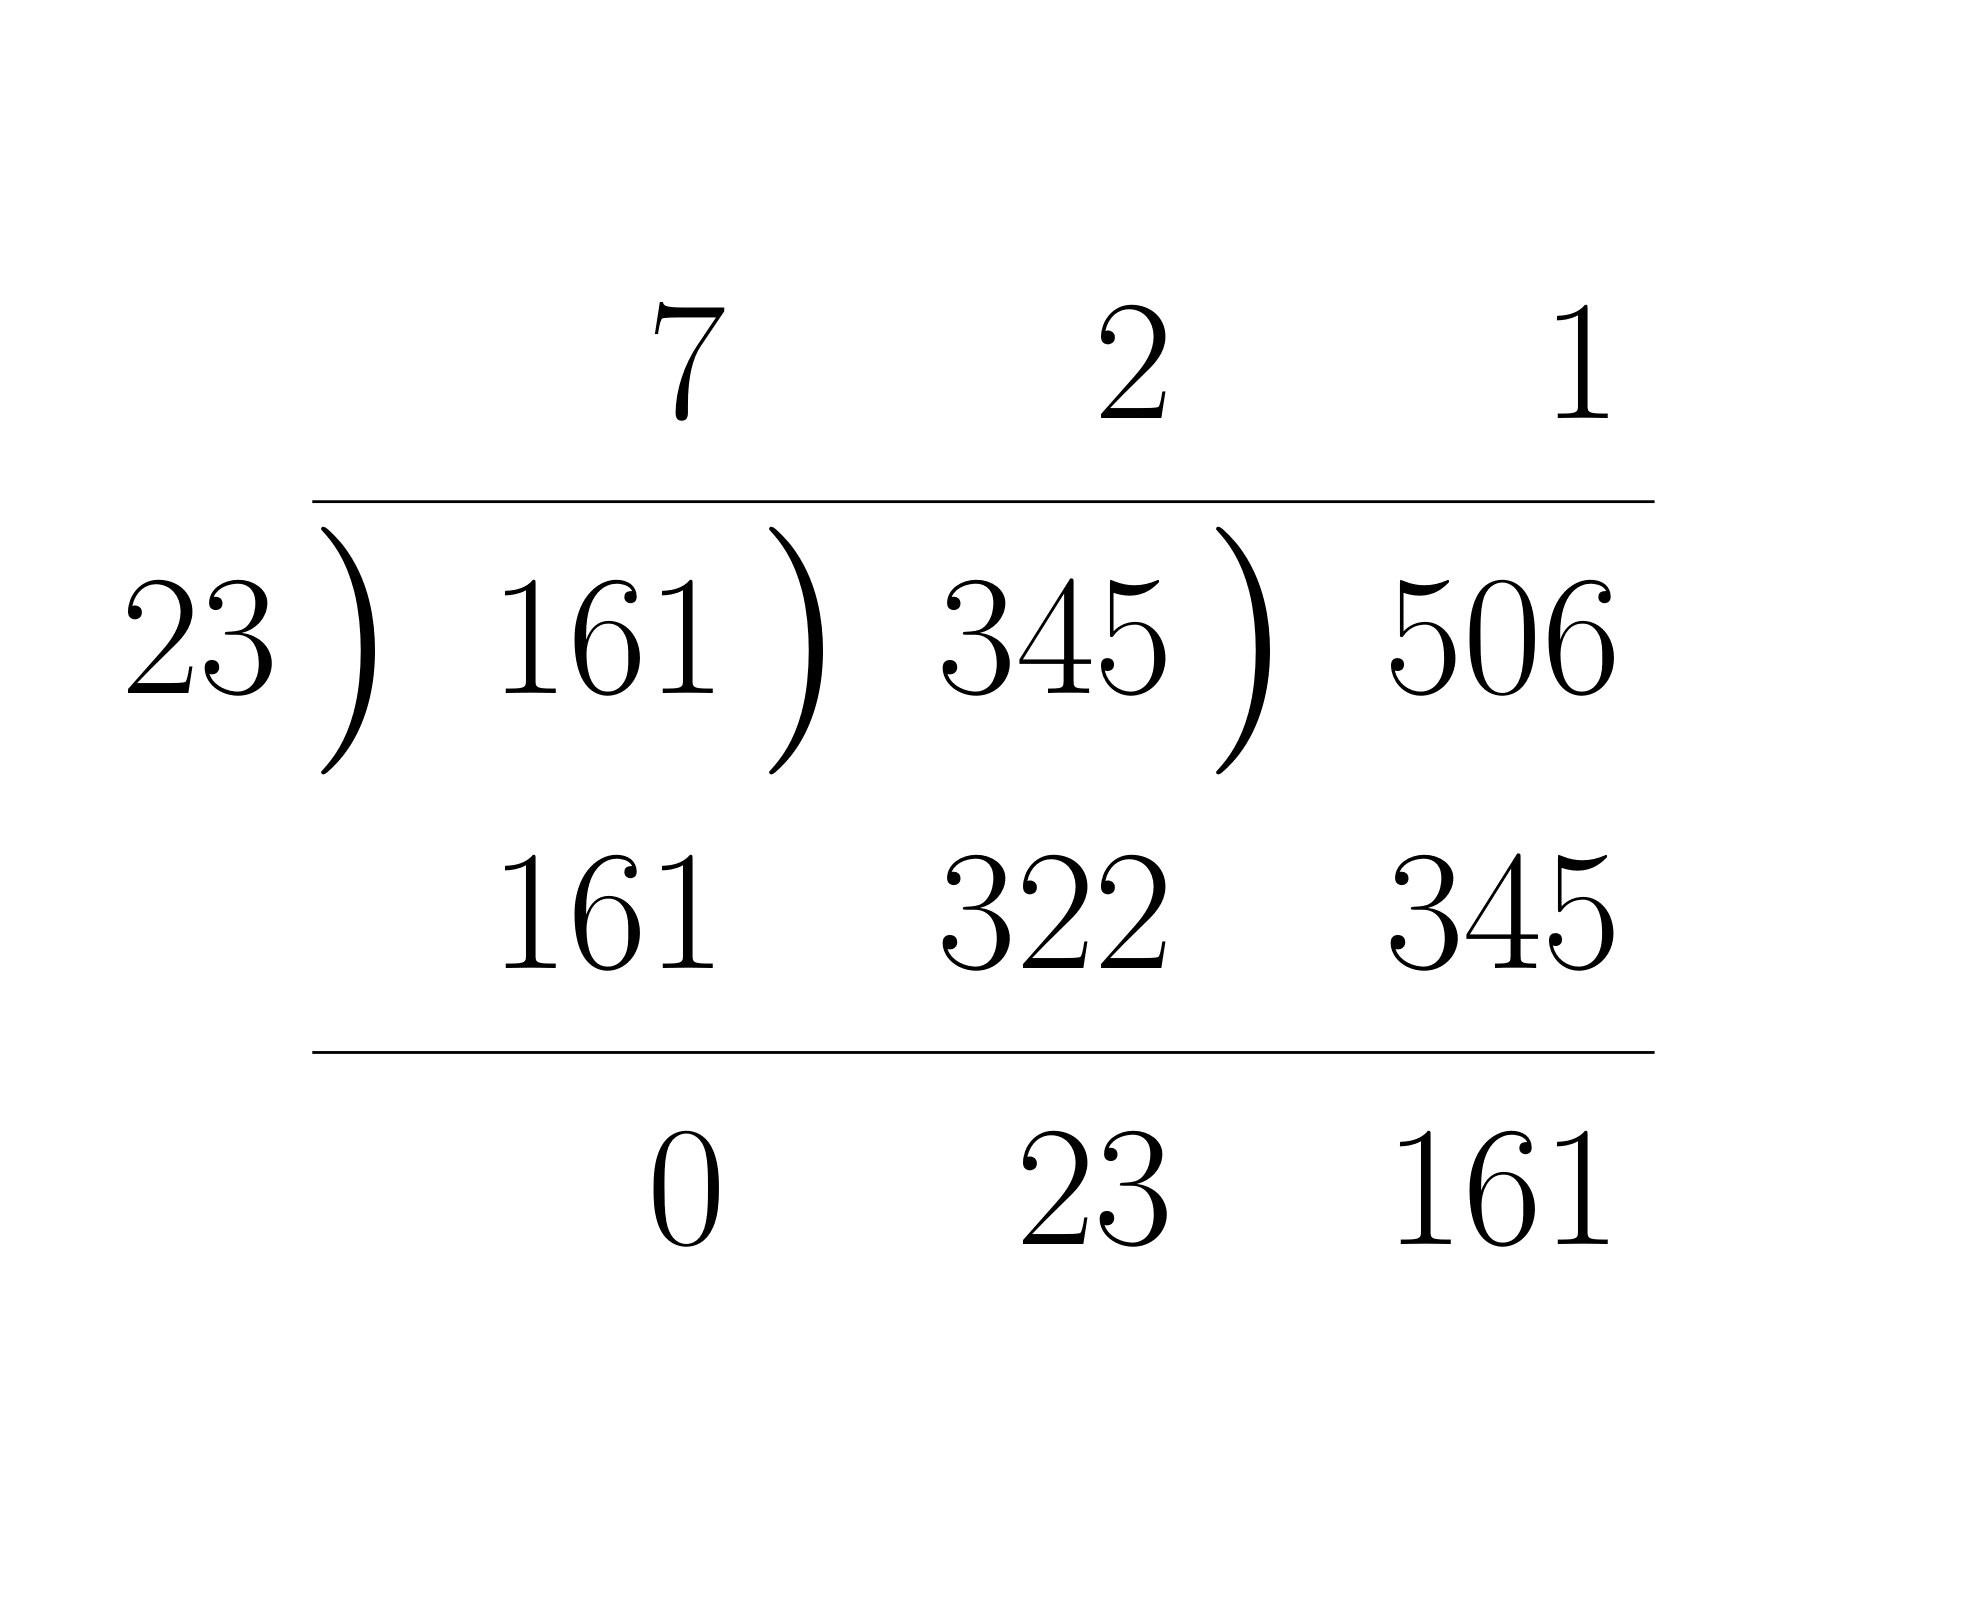 ユークリッドの互除法の計算法3